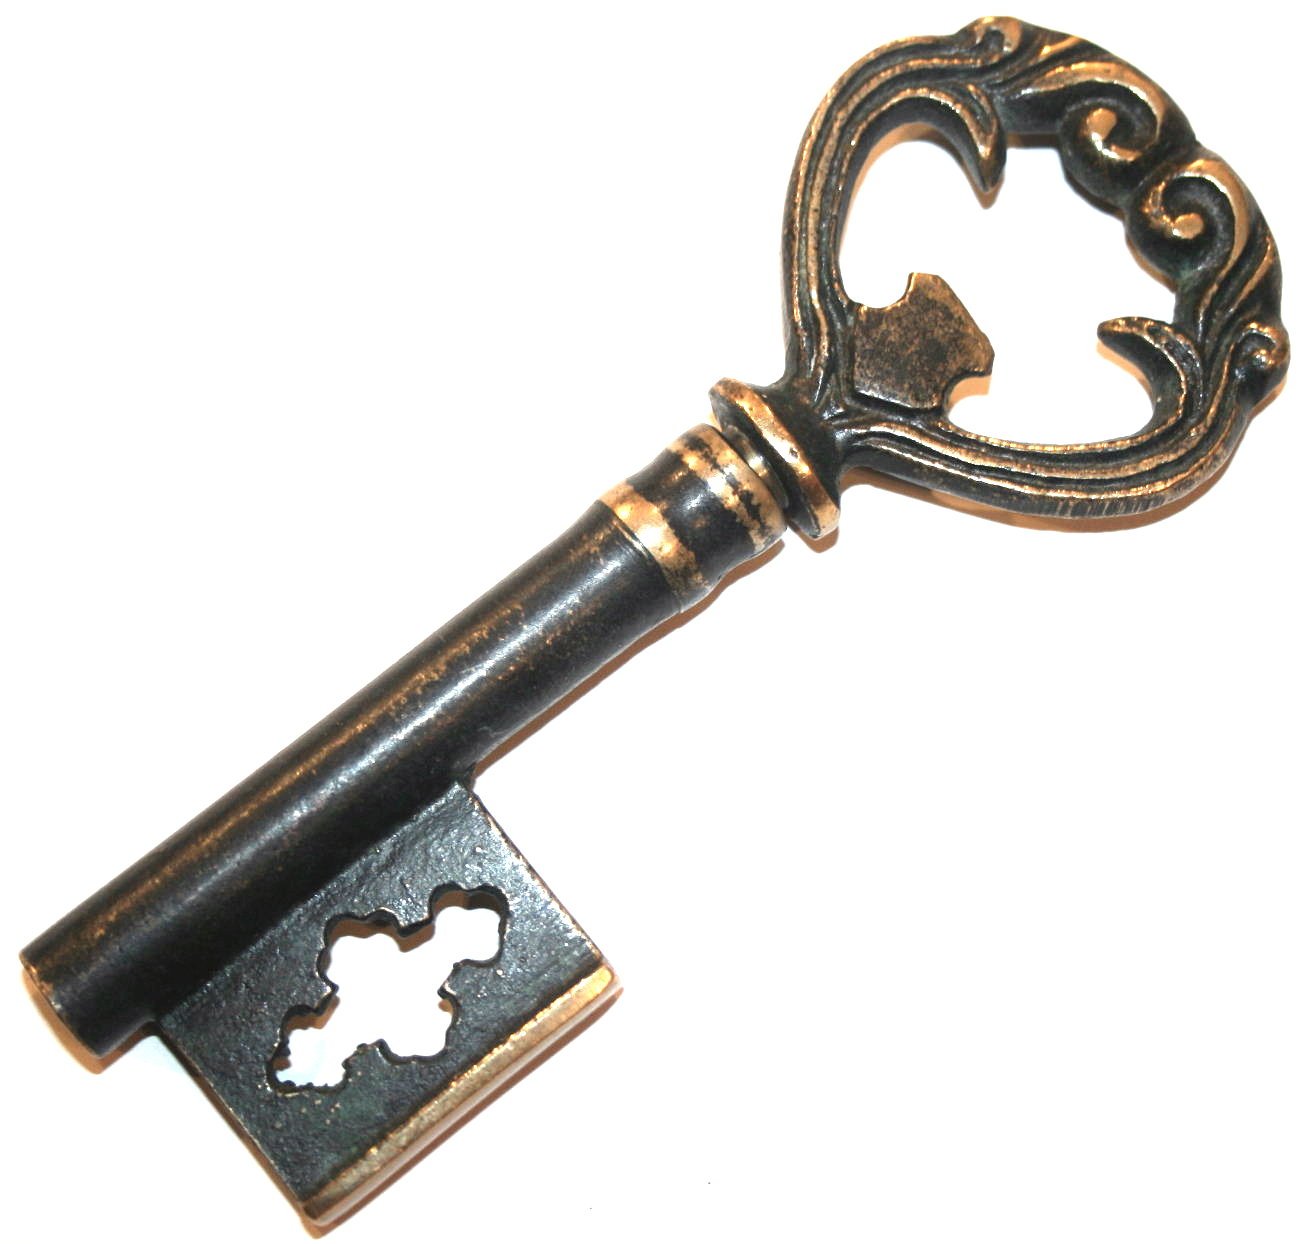 Keys picture. Старинный ключ. Ключ старинный большой. Красивый старинный ключ. Старинный ключ от сундука.